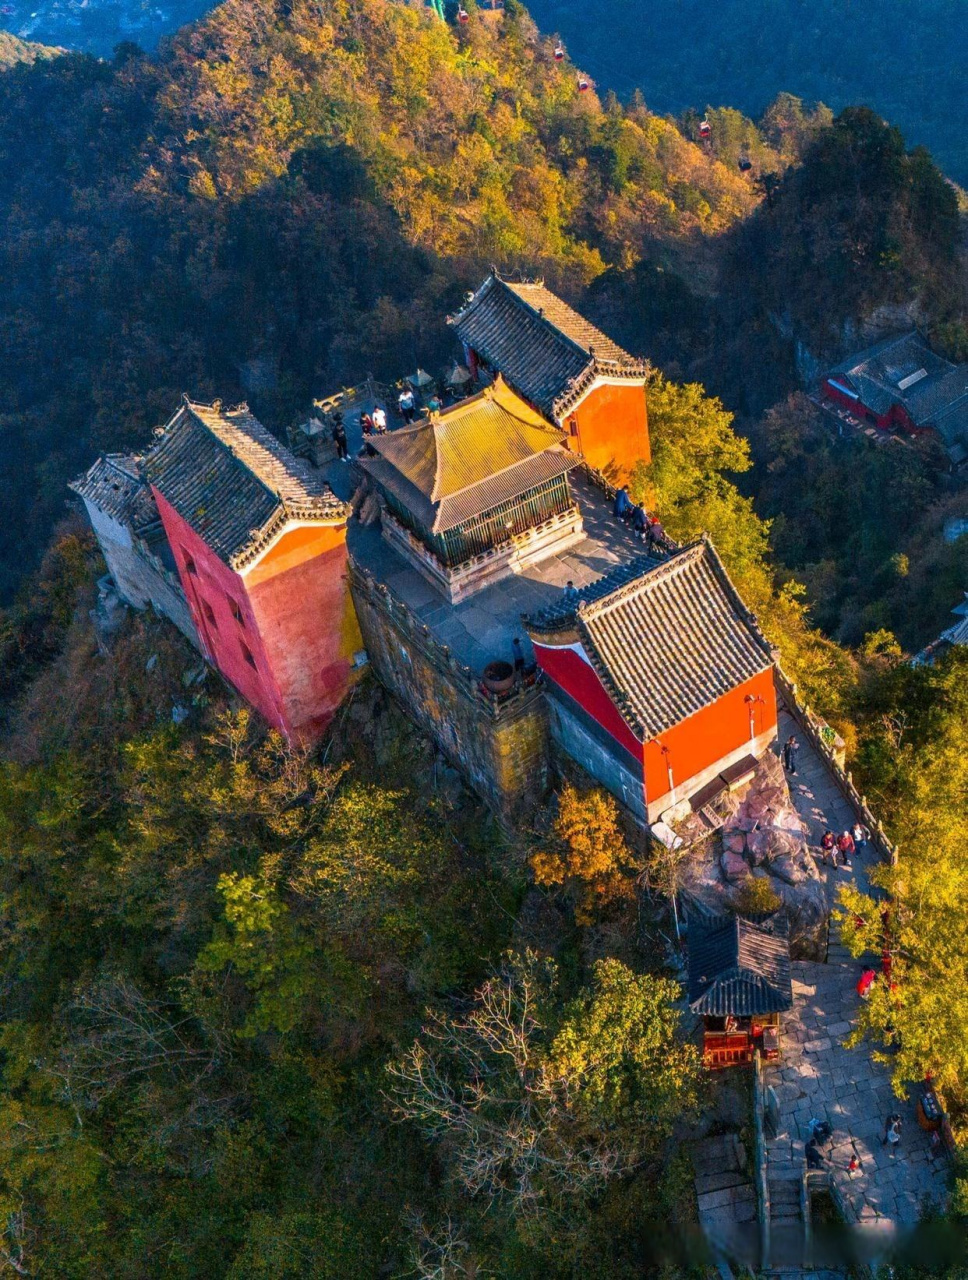 武当山是中国道家文化的发源地,被誉为武当圣地,也是全球道教信仰的